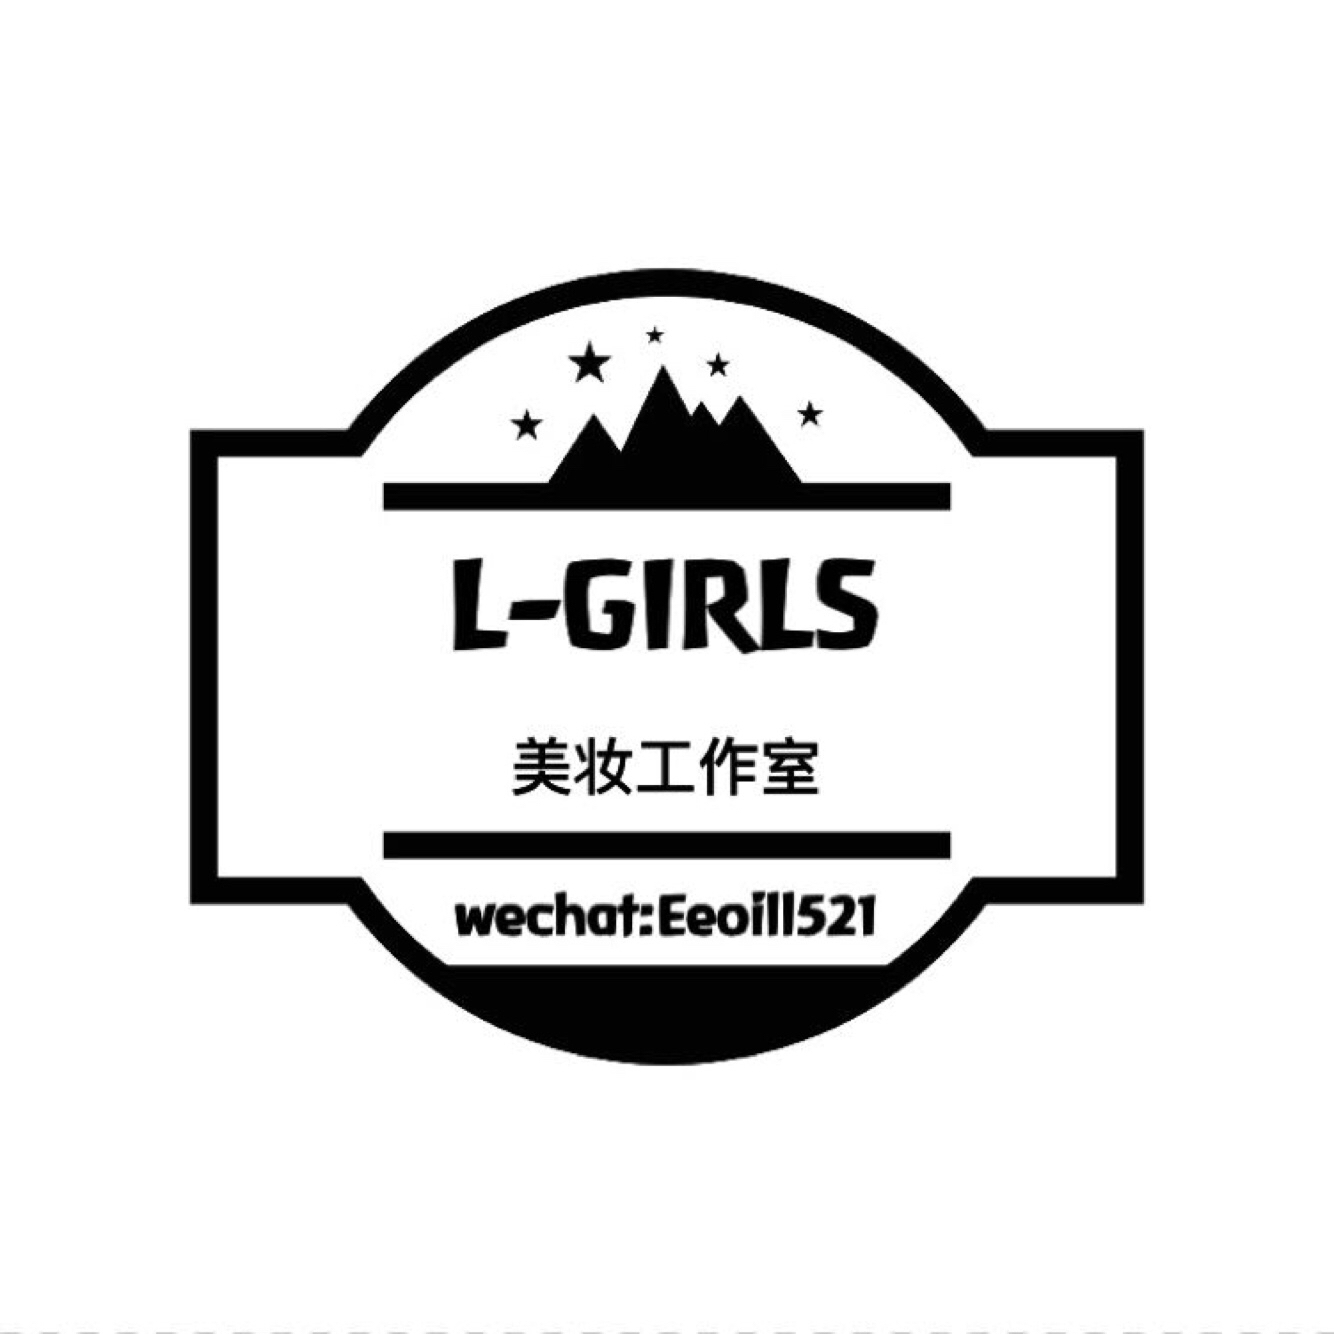 L-GIRLS美妆